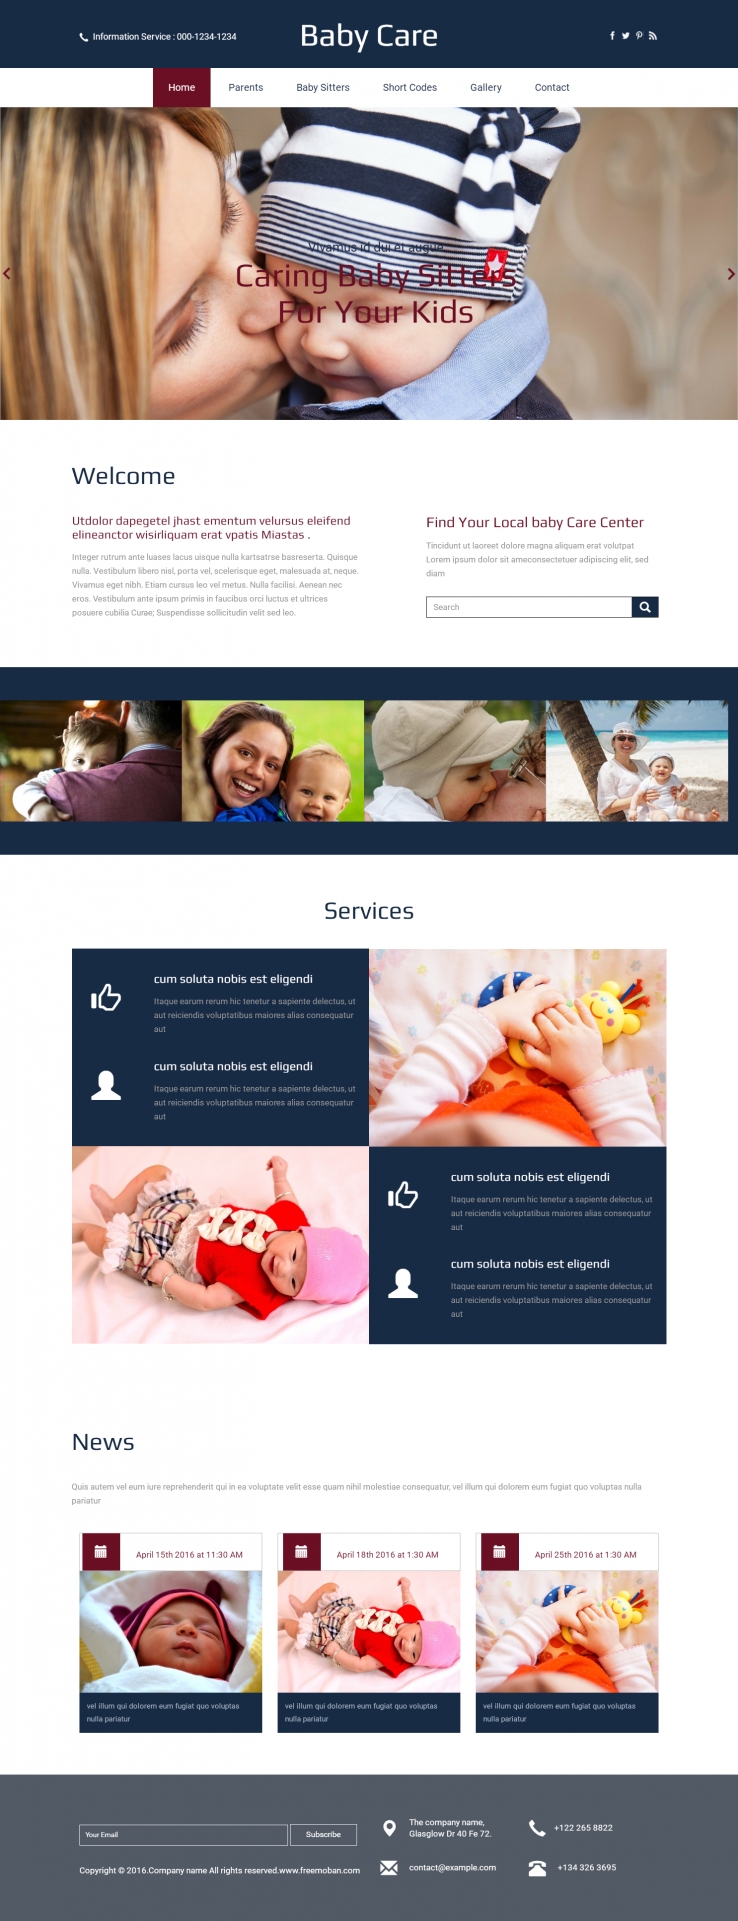 蓝色宽屏风格的幼儿护理网站模板下载